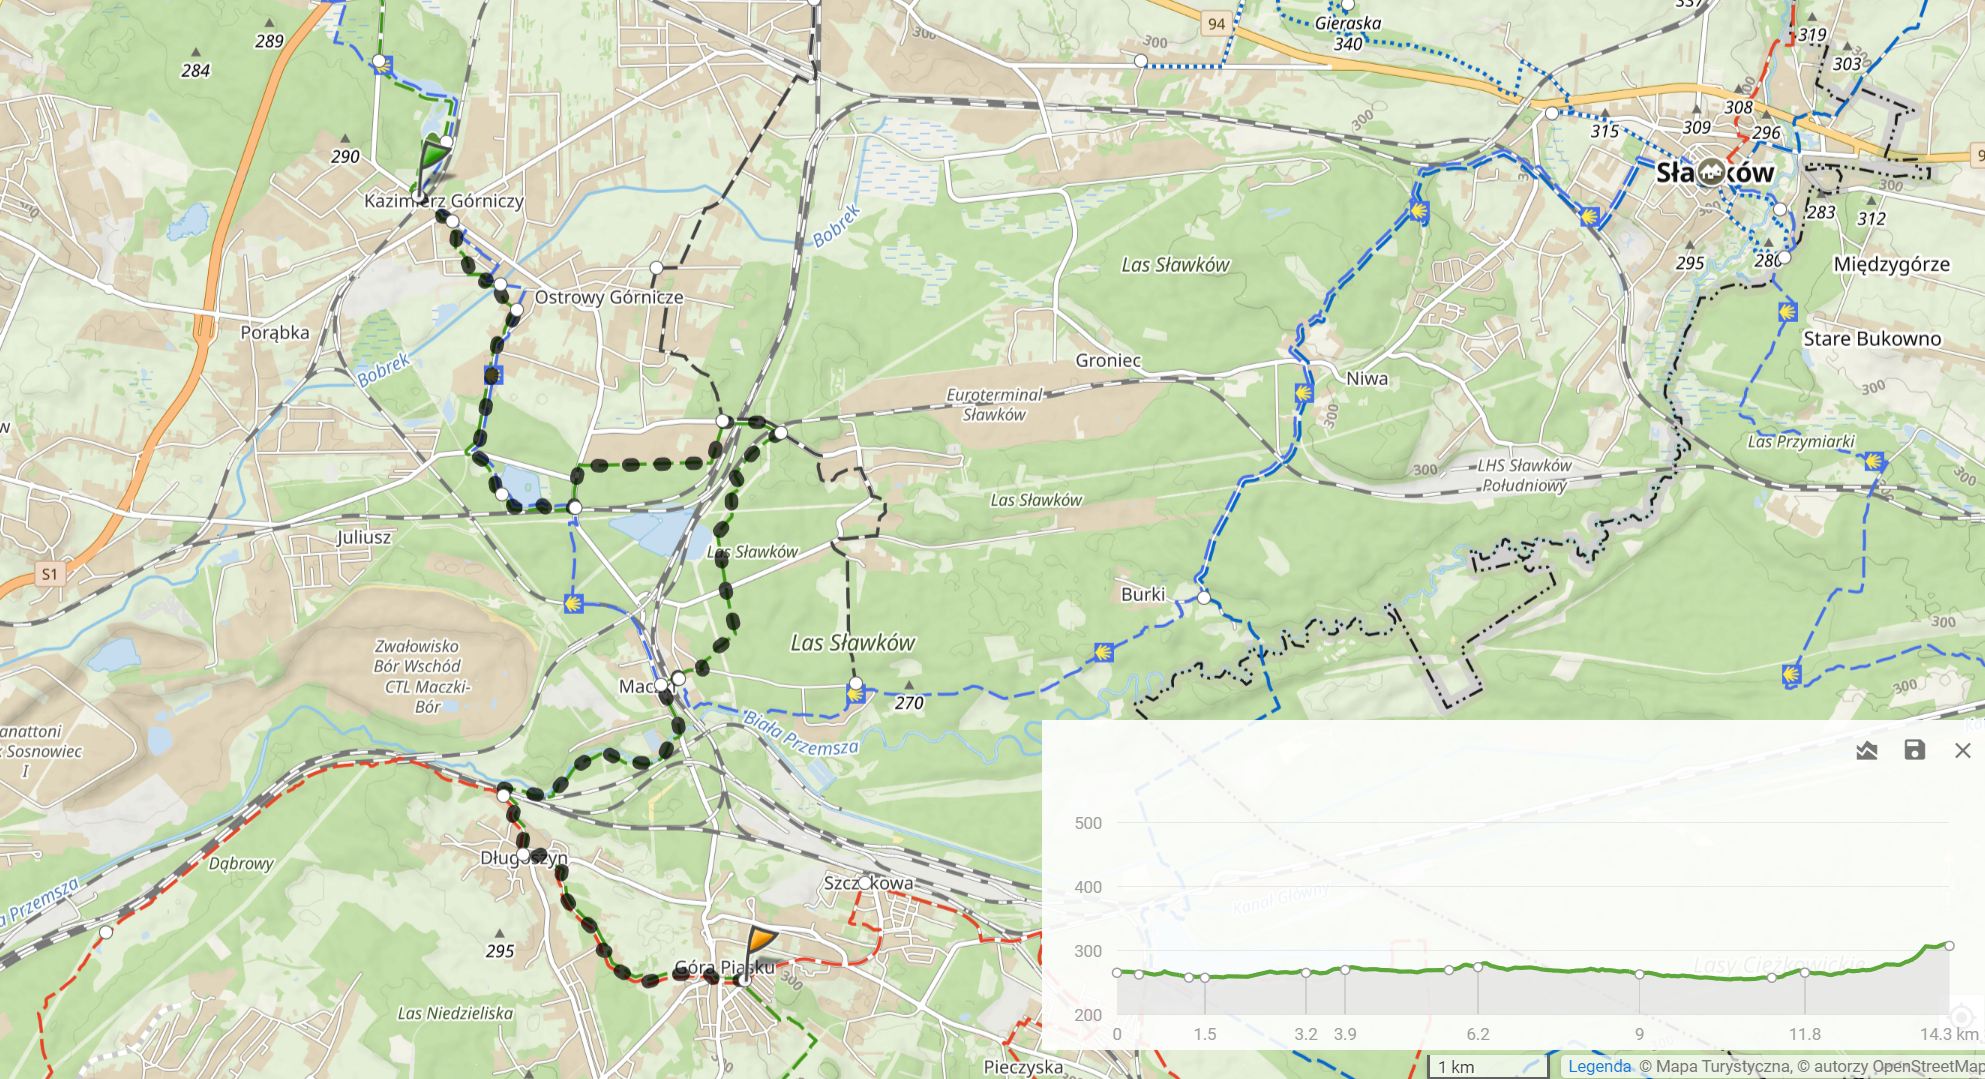 Zielony szlak 25-lecia PTTK, odcinek 4 ”Kazimierz Górniczy - Jaworzno Szczakowa” (14,3km, 116m podejść)